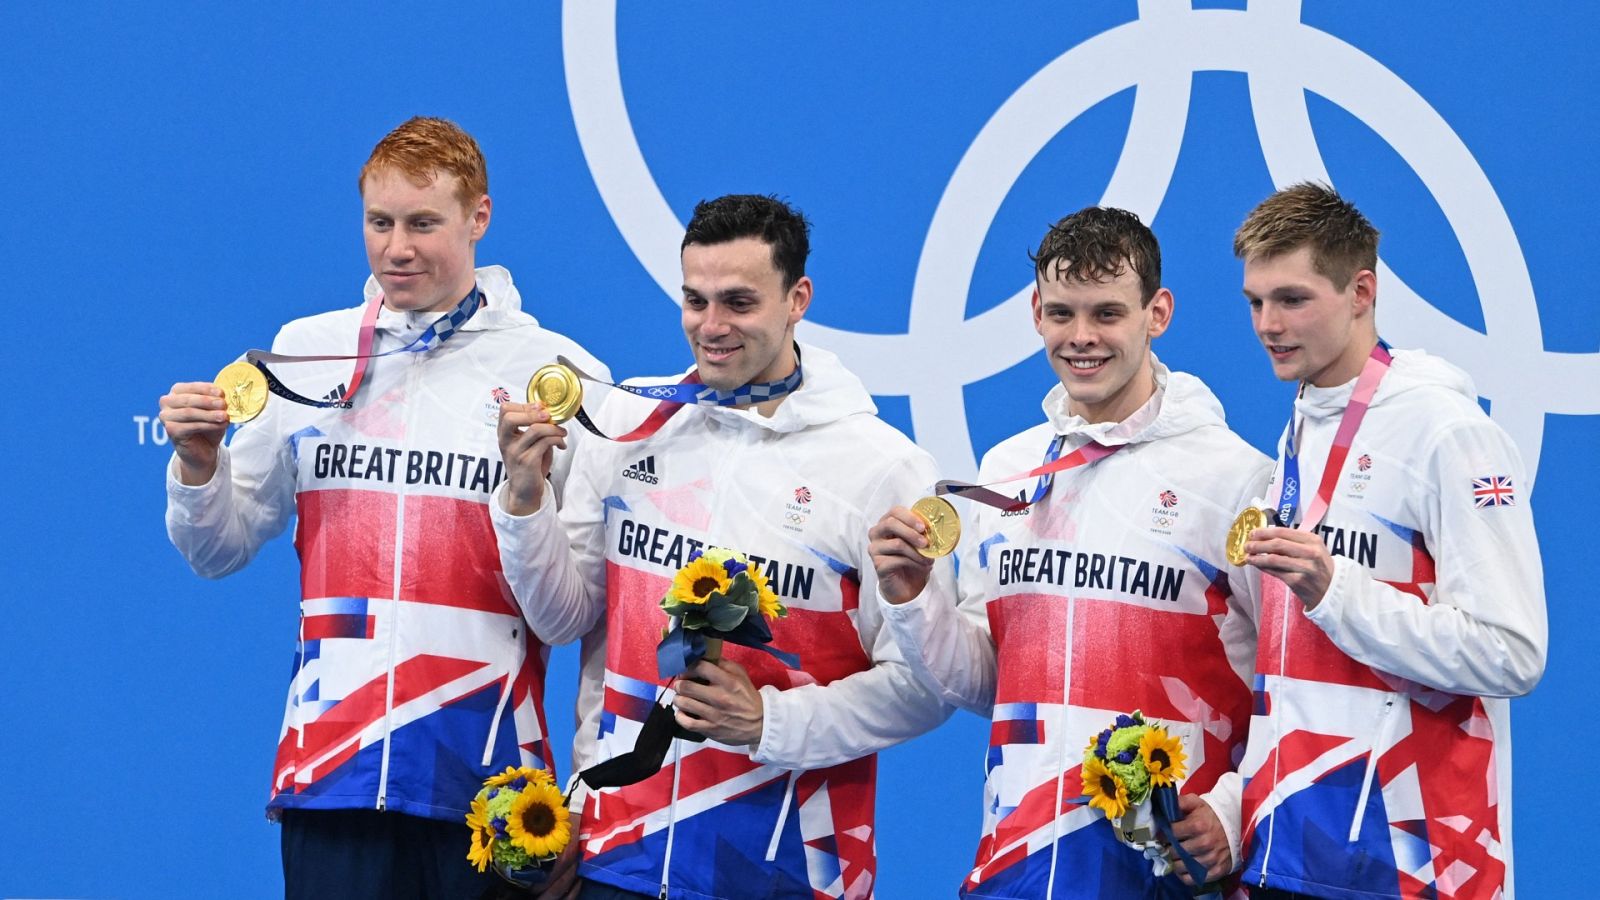 Gran Bretaña gana el oro en 4x200 relevos y roza el récord mundial